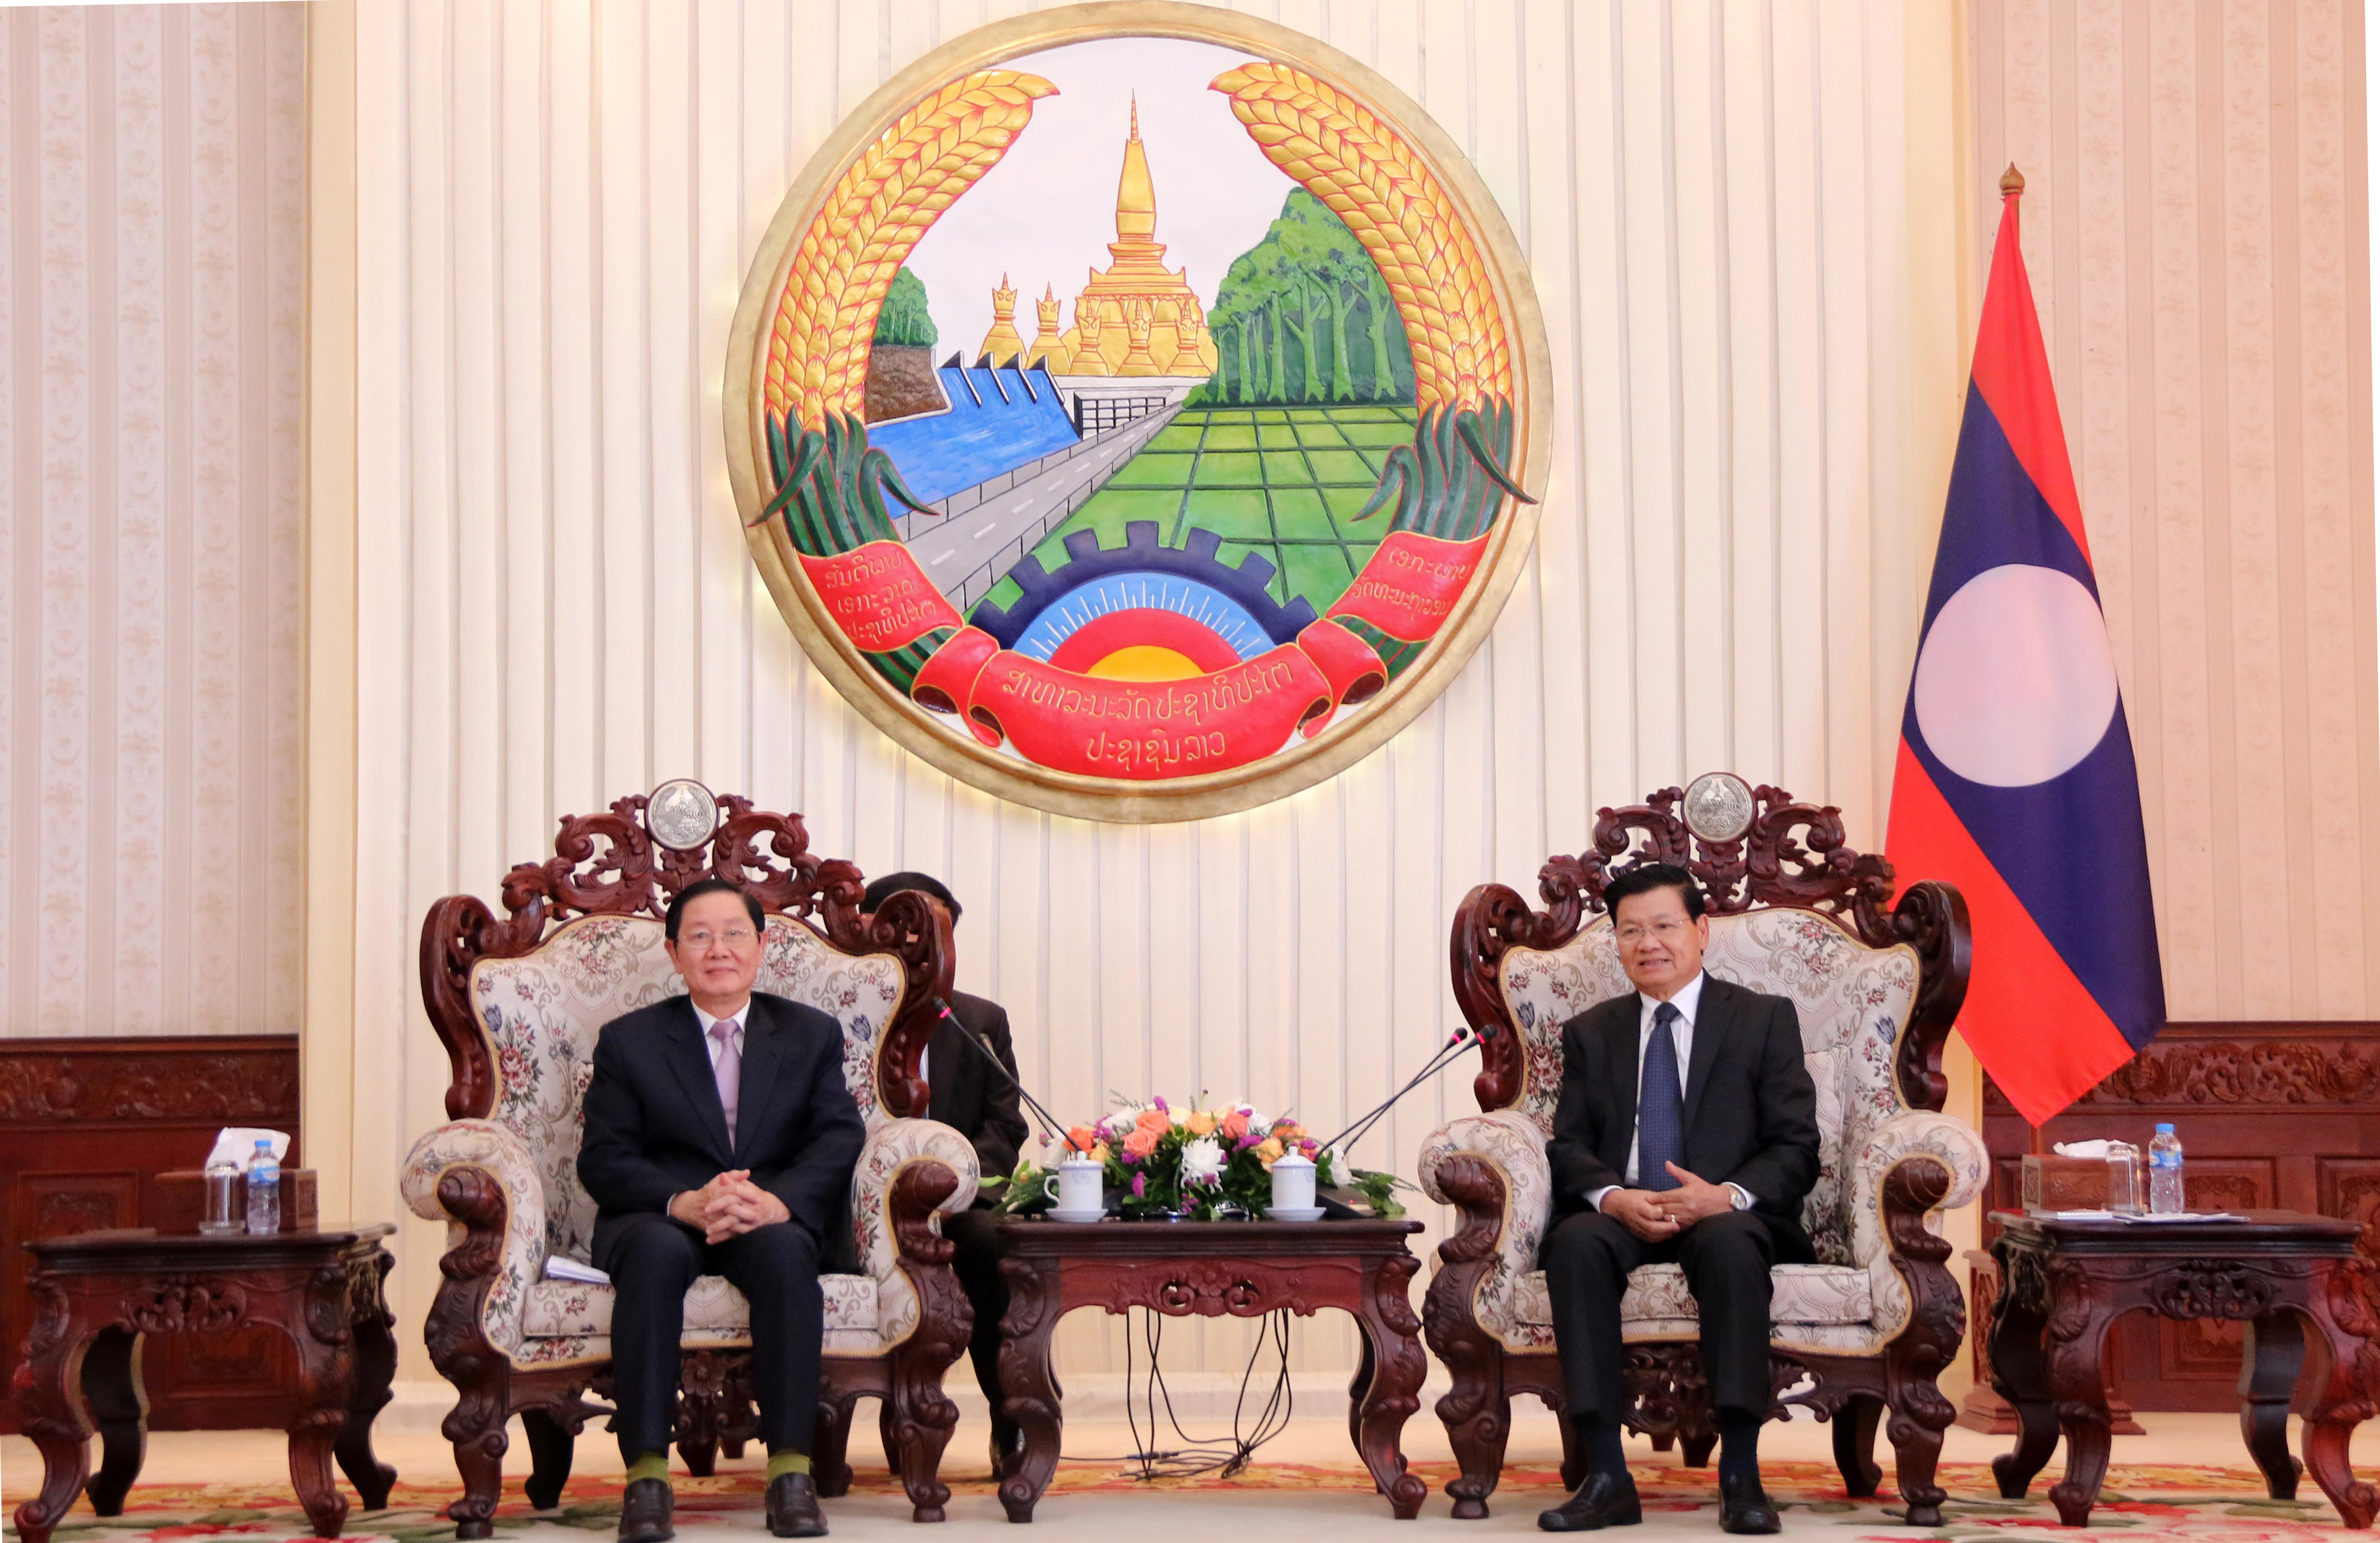 Bộ trưởng Bộ Nội vụ Lê Vĩnh Tân chào xã giao Thủ tướng Chính phủ và Phó Chủ tịch nước Cộng hòa dân chủ nhân dân Lào